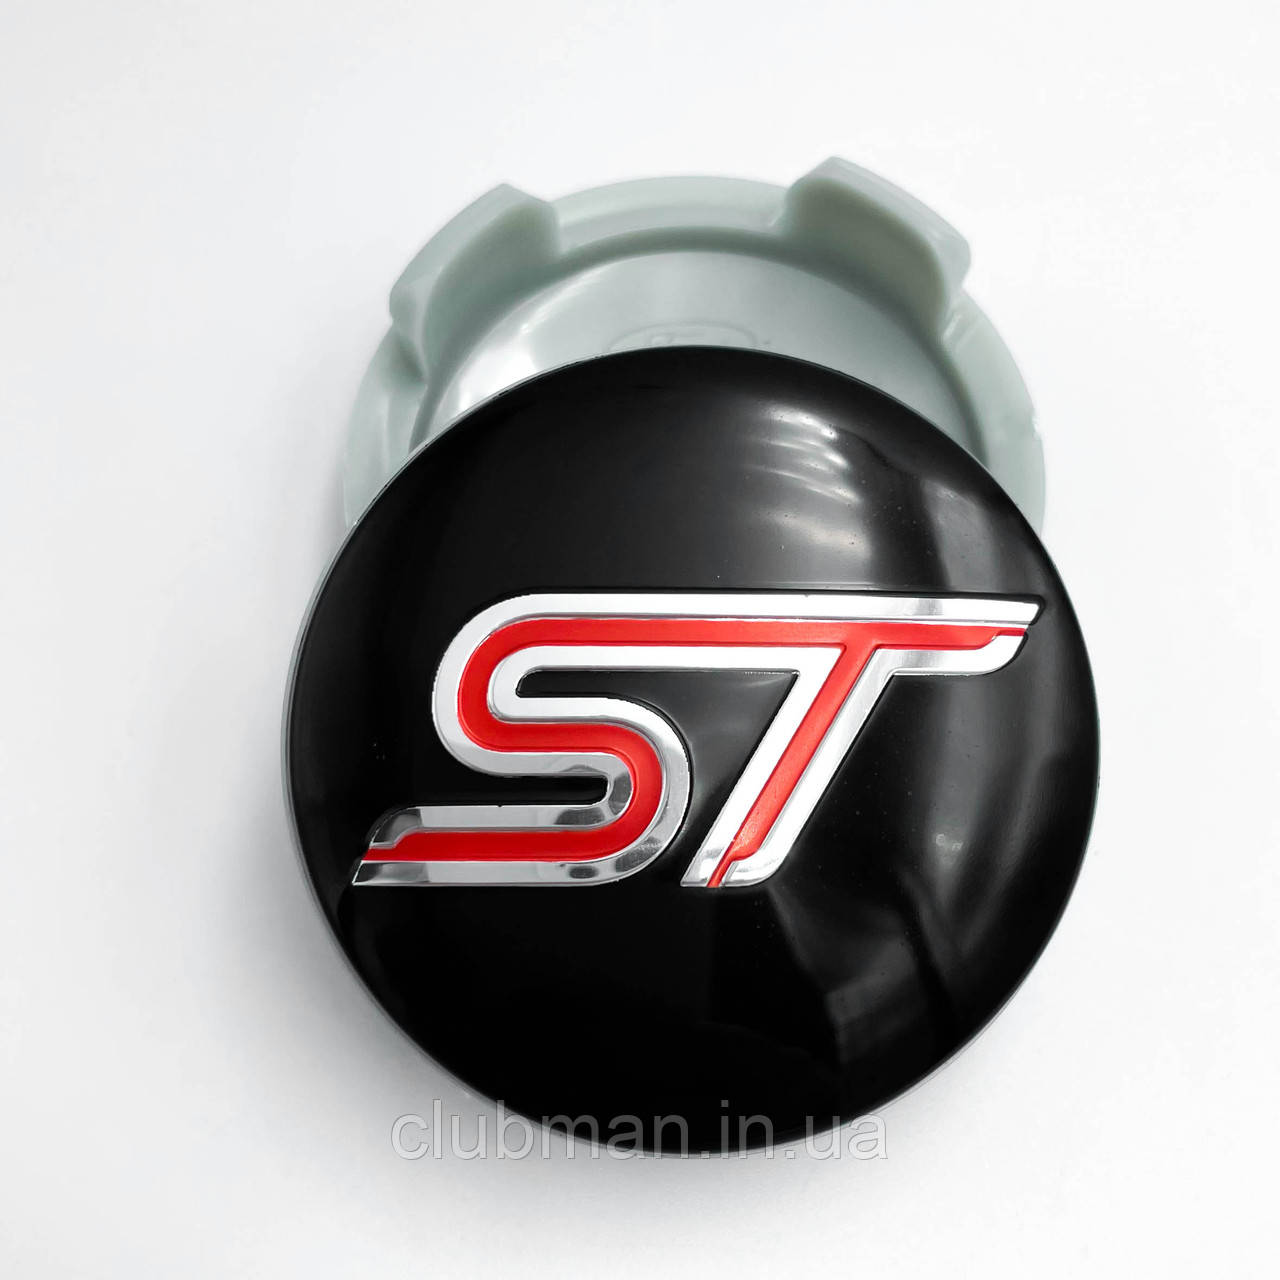 Колпачки (заглушки) в литые диски FORD ST (Форд СТ) 54 мм Черные, Красный лого